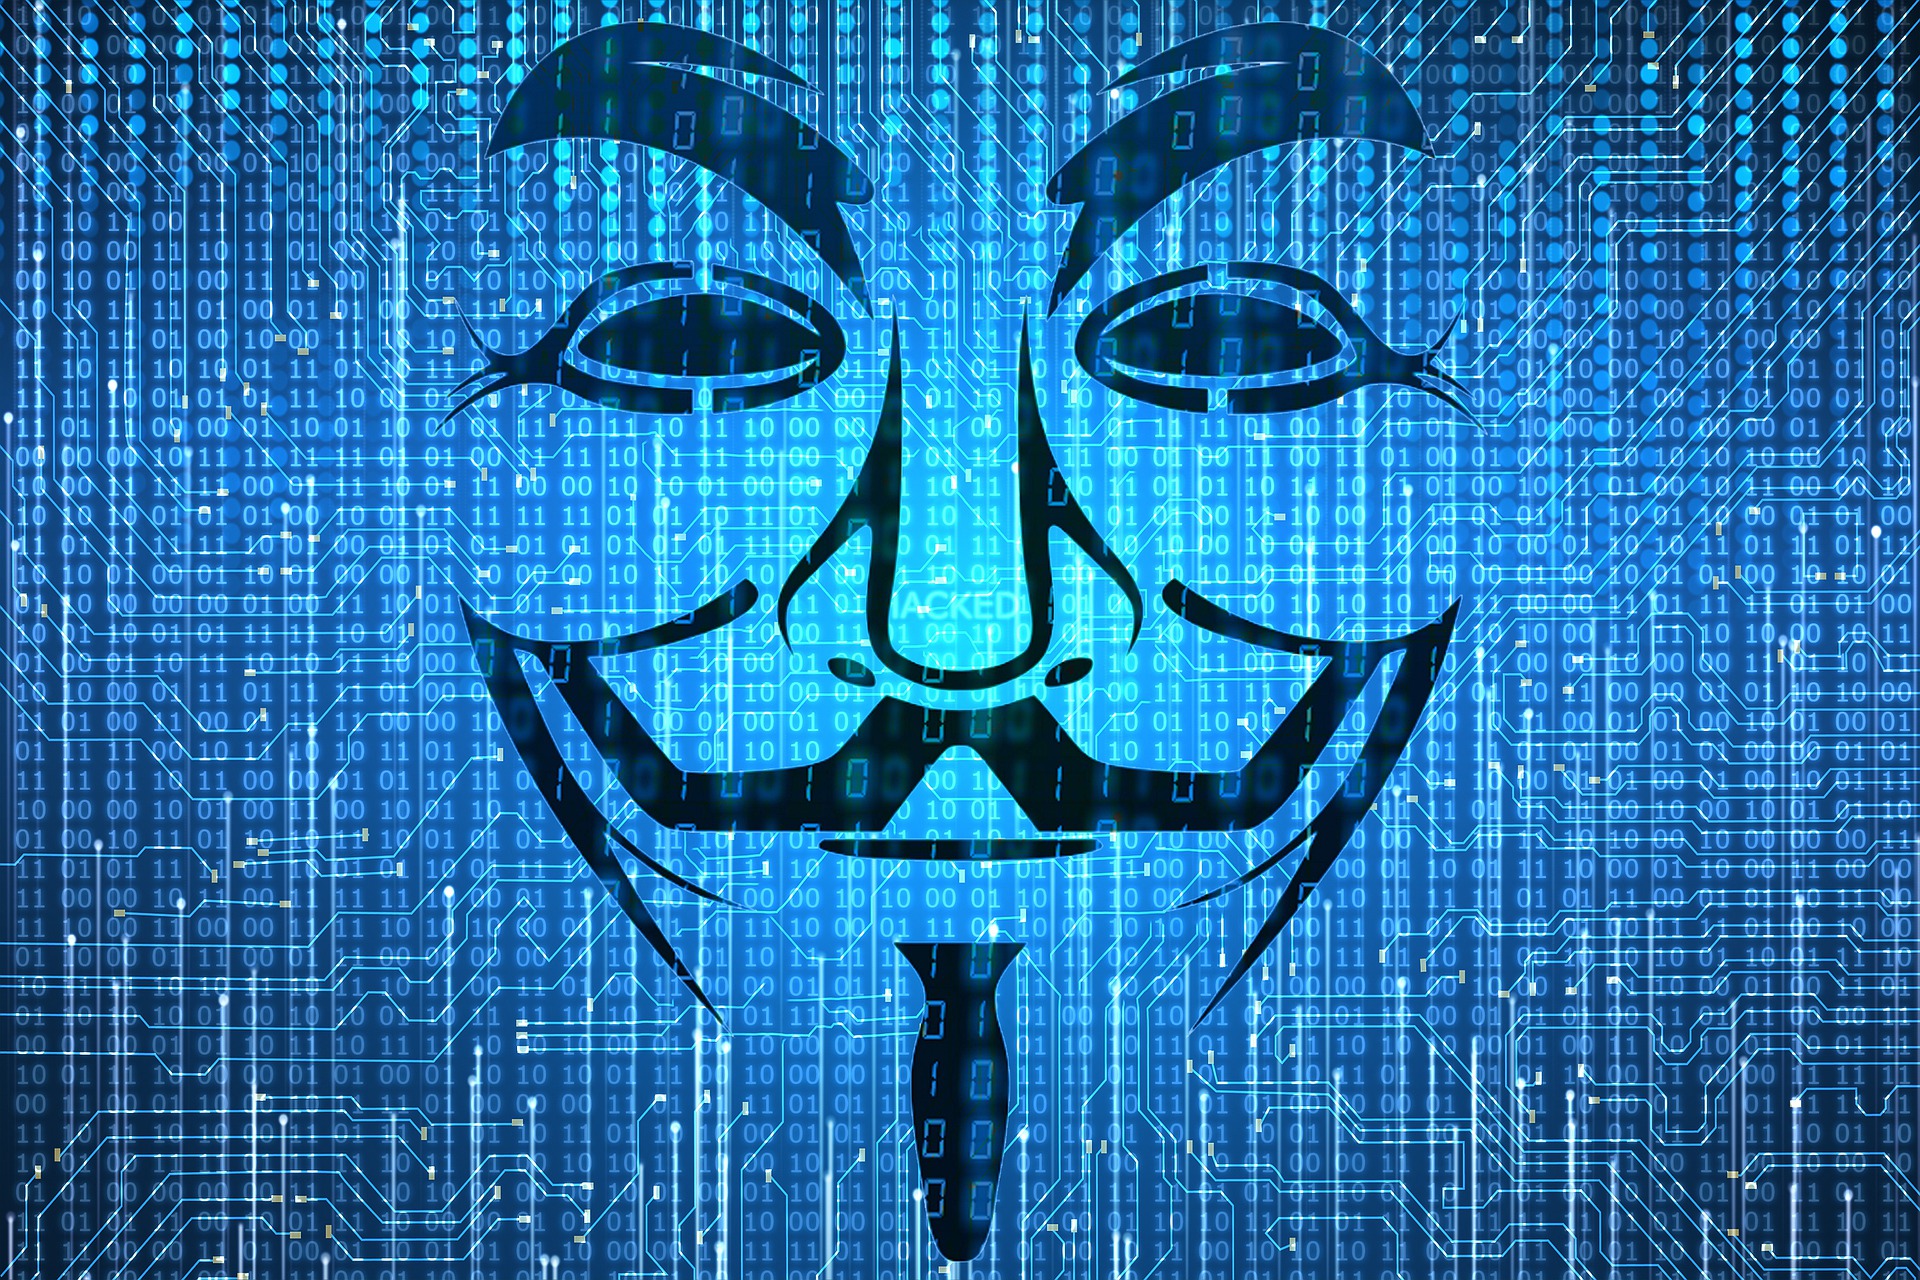 Na obrázku je mezi nulami a jedničkami obrys masky skupiny Anonymous